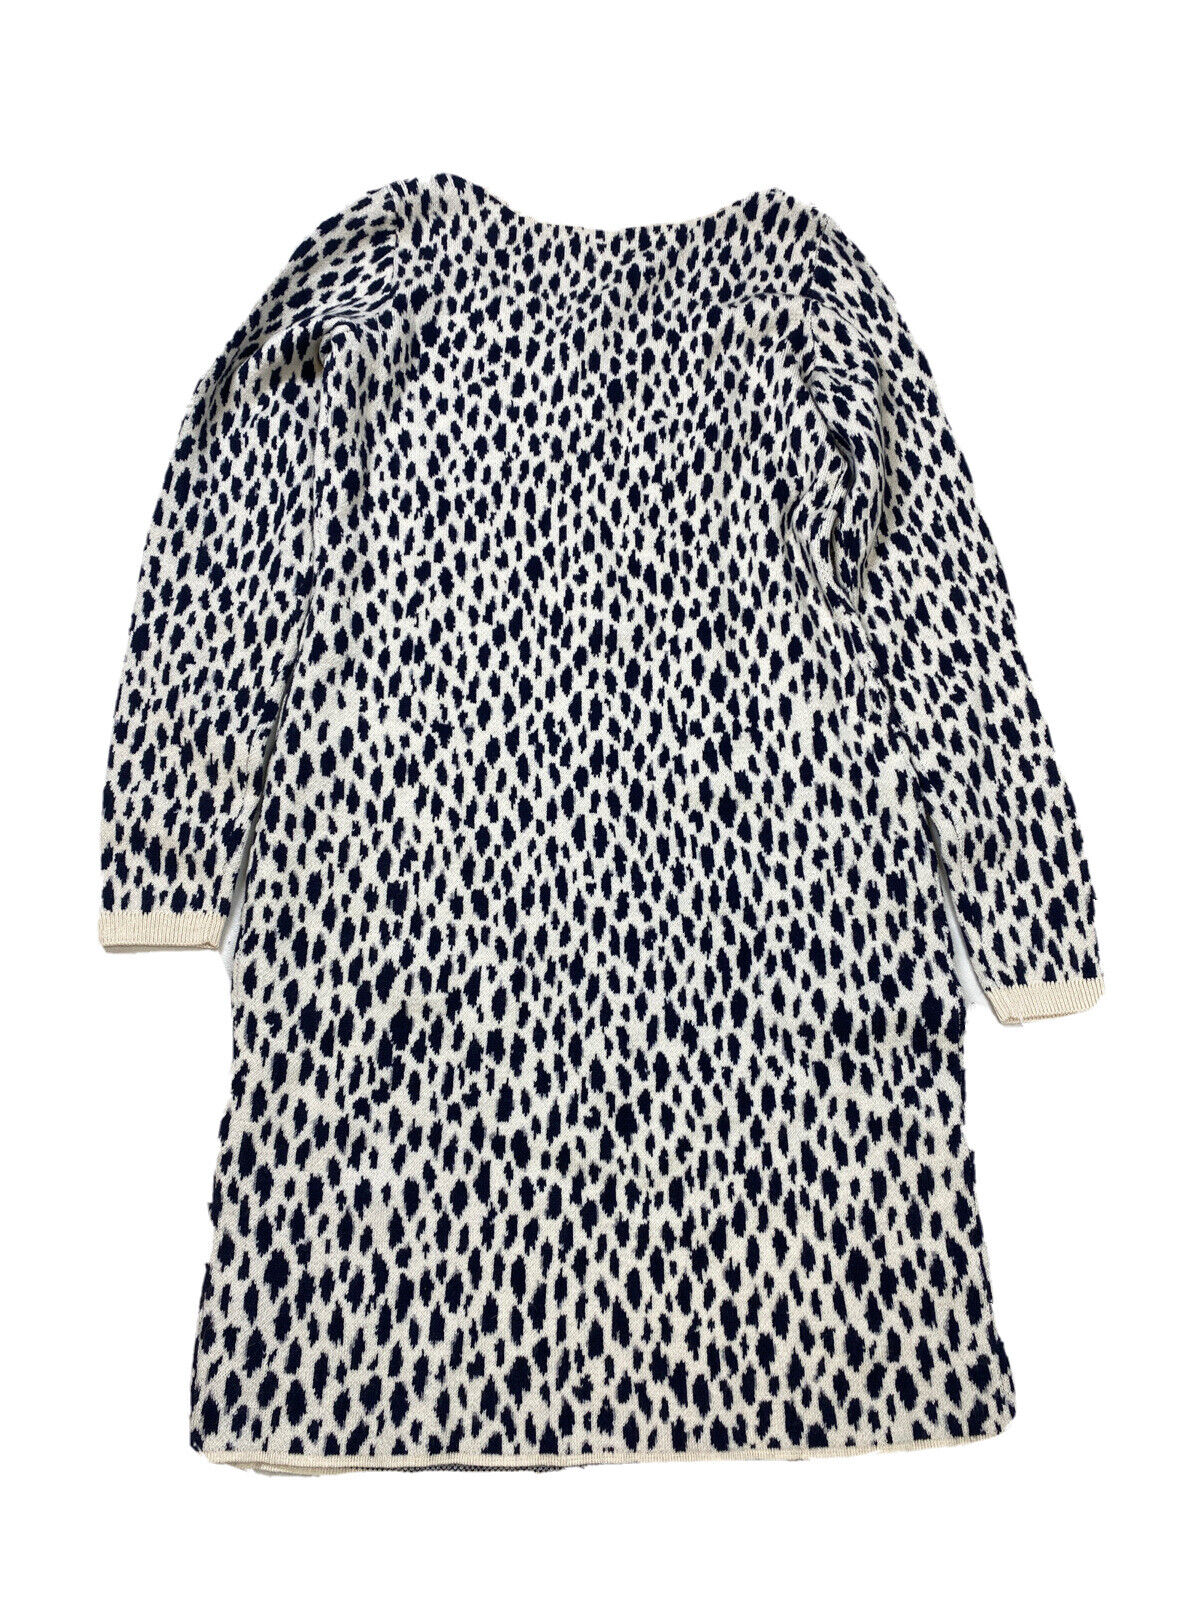 NEW Ann Taylor Women's Black/White Cheetah Club Sweater Dress - XXS